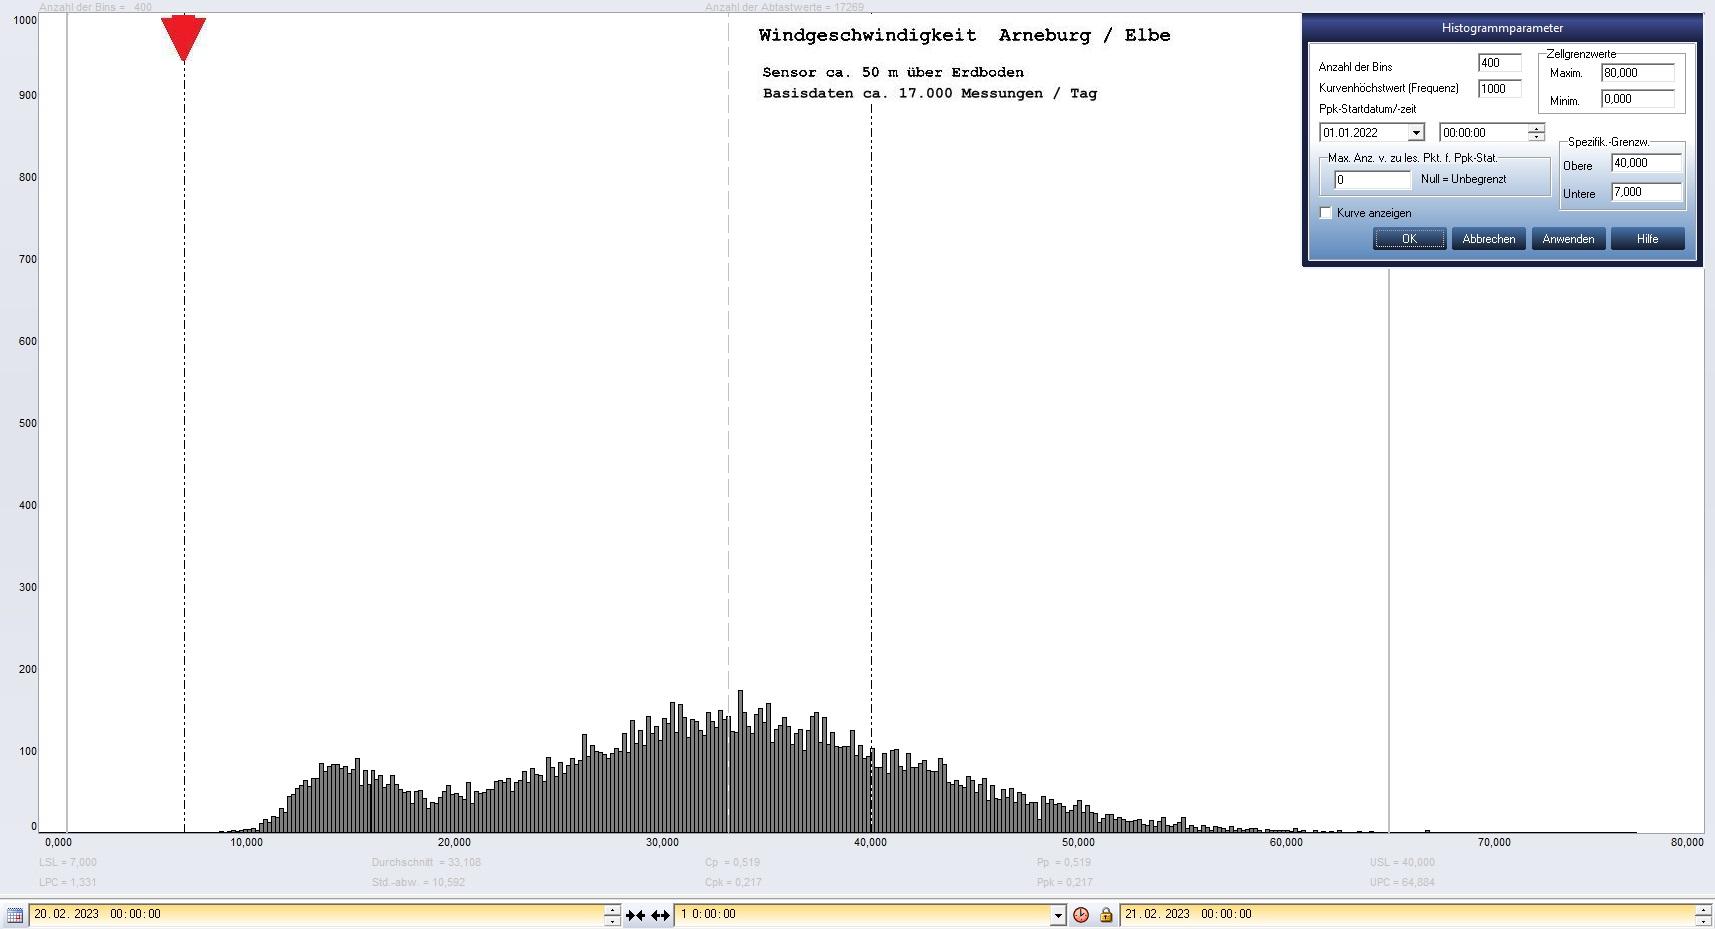 Arneburg Tages-Histogramm Winddaten, 20.02.2023
  Histogramm, Sensor auf Gebude, ca. 50 m ber Erdboden, Basis: 5s-Aufzeichnung